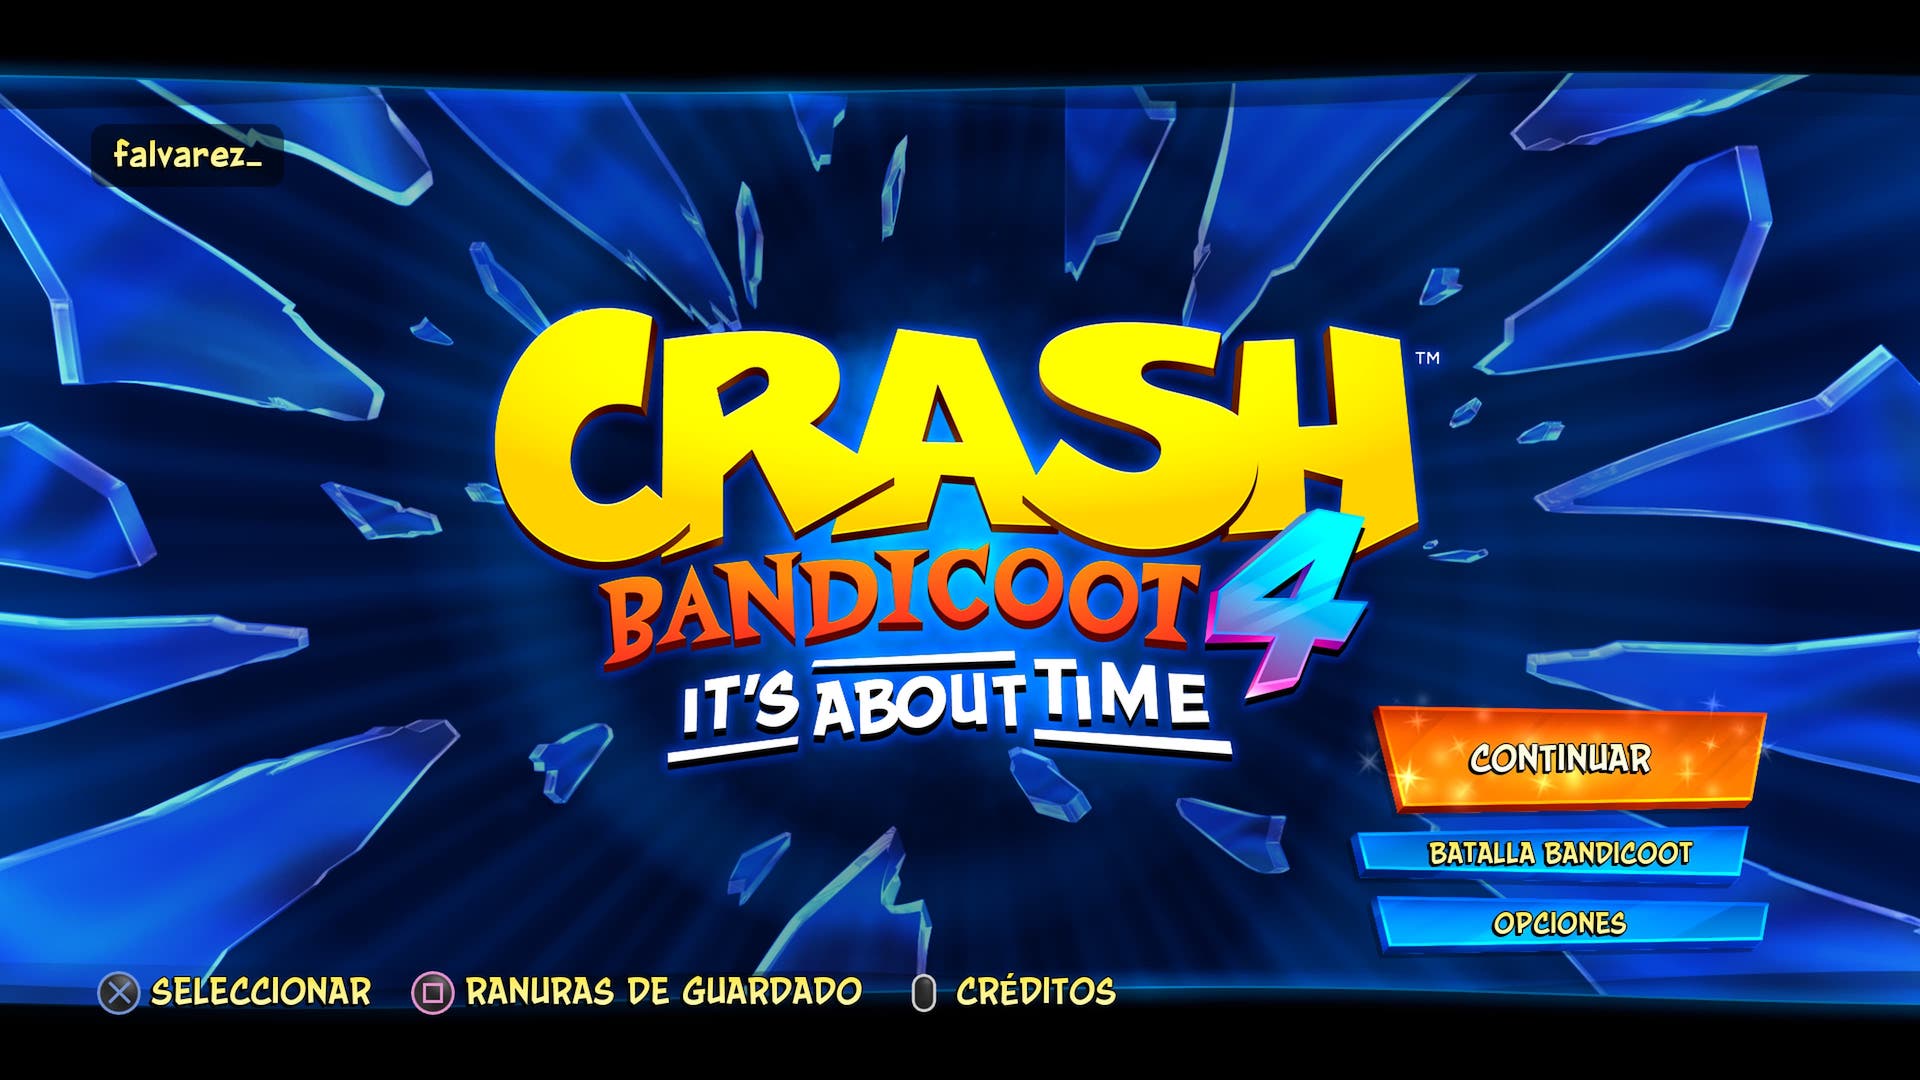 Crash Bandicoot 4: Menú